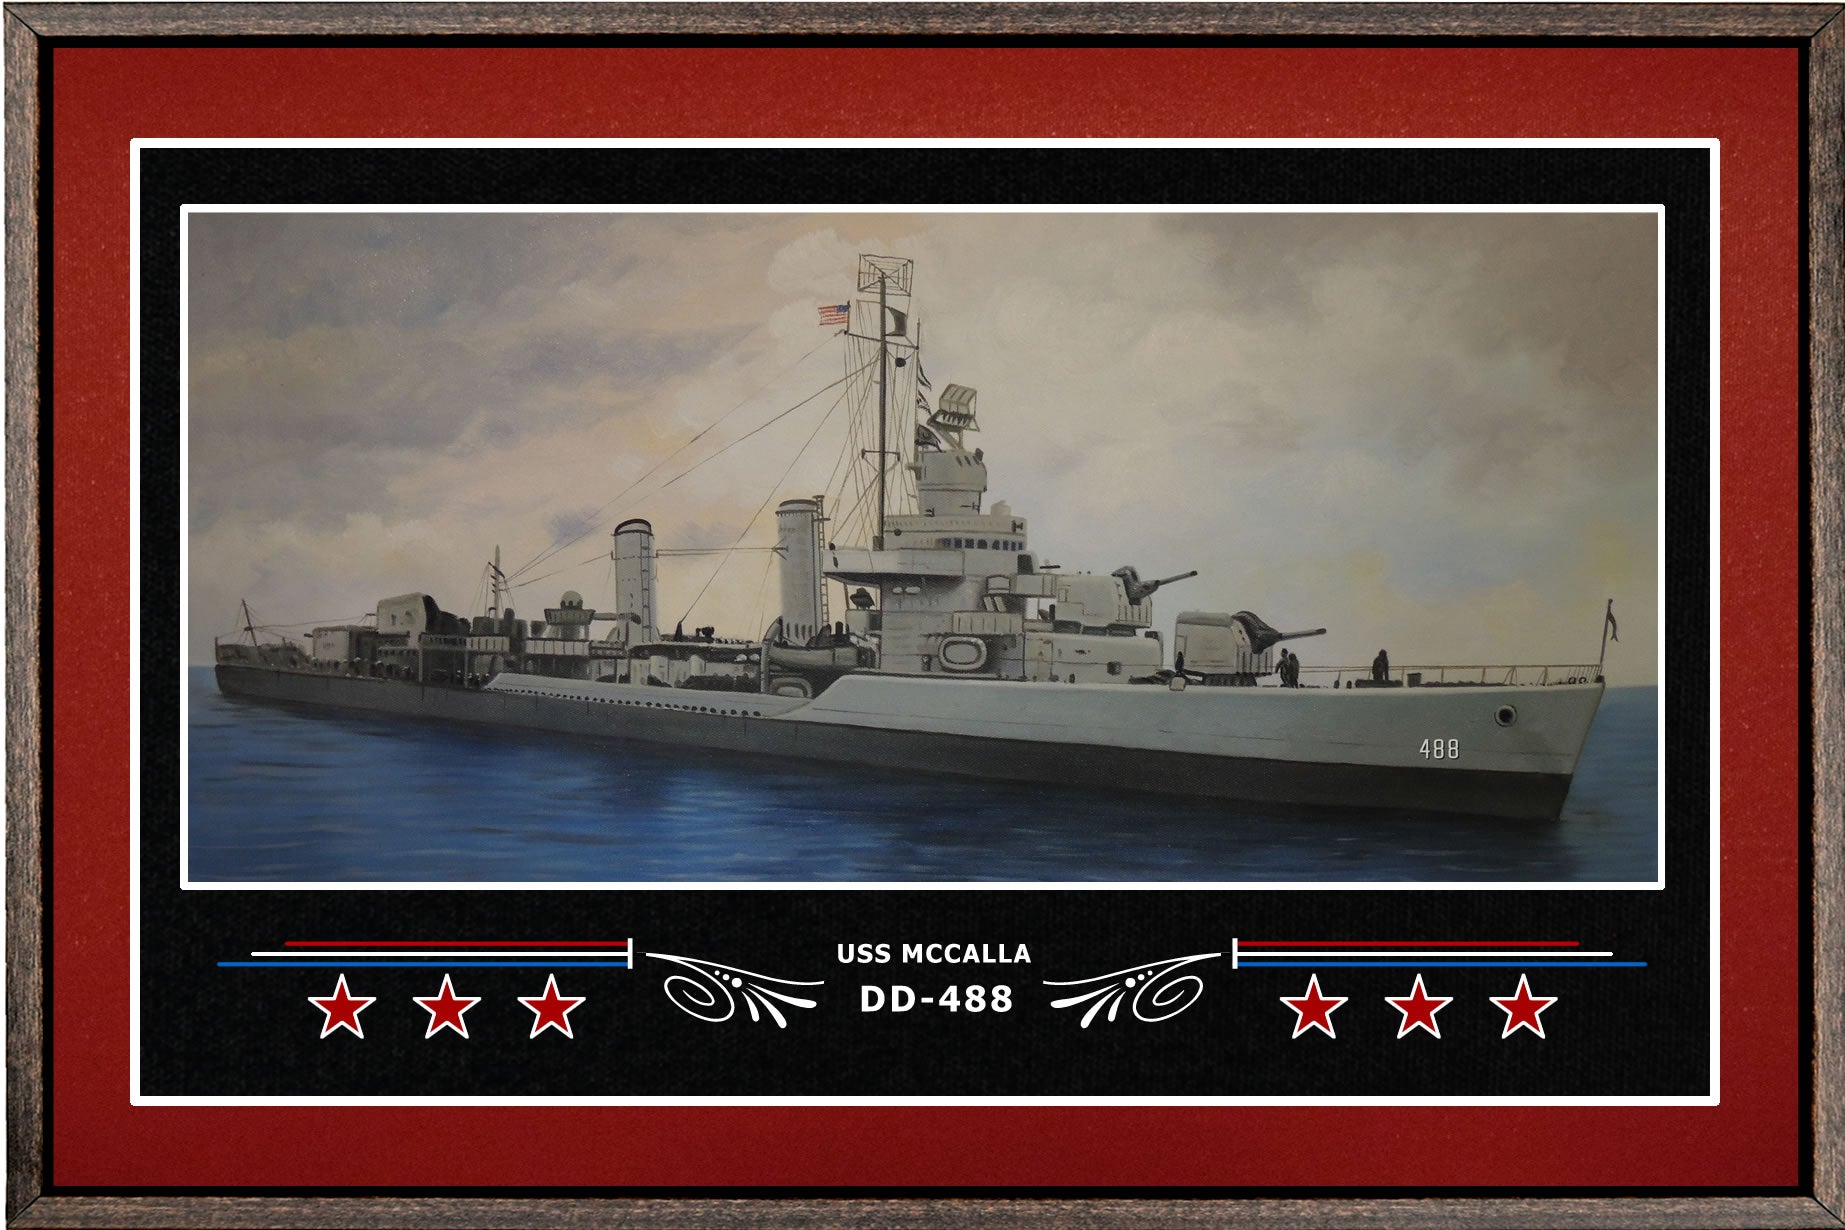 USS MCCALLA DD 488 BOX FRAMED CANVAS ART BURGUNDY